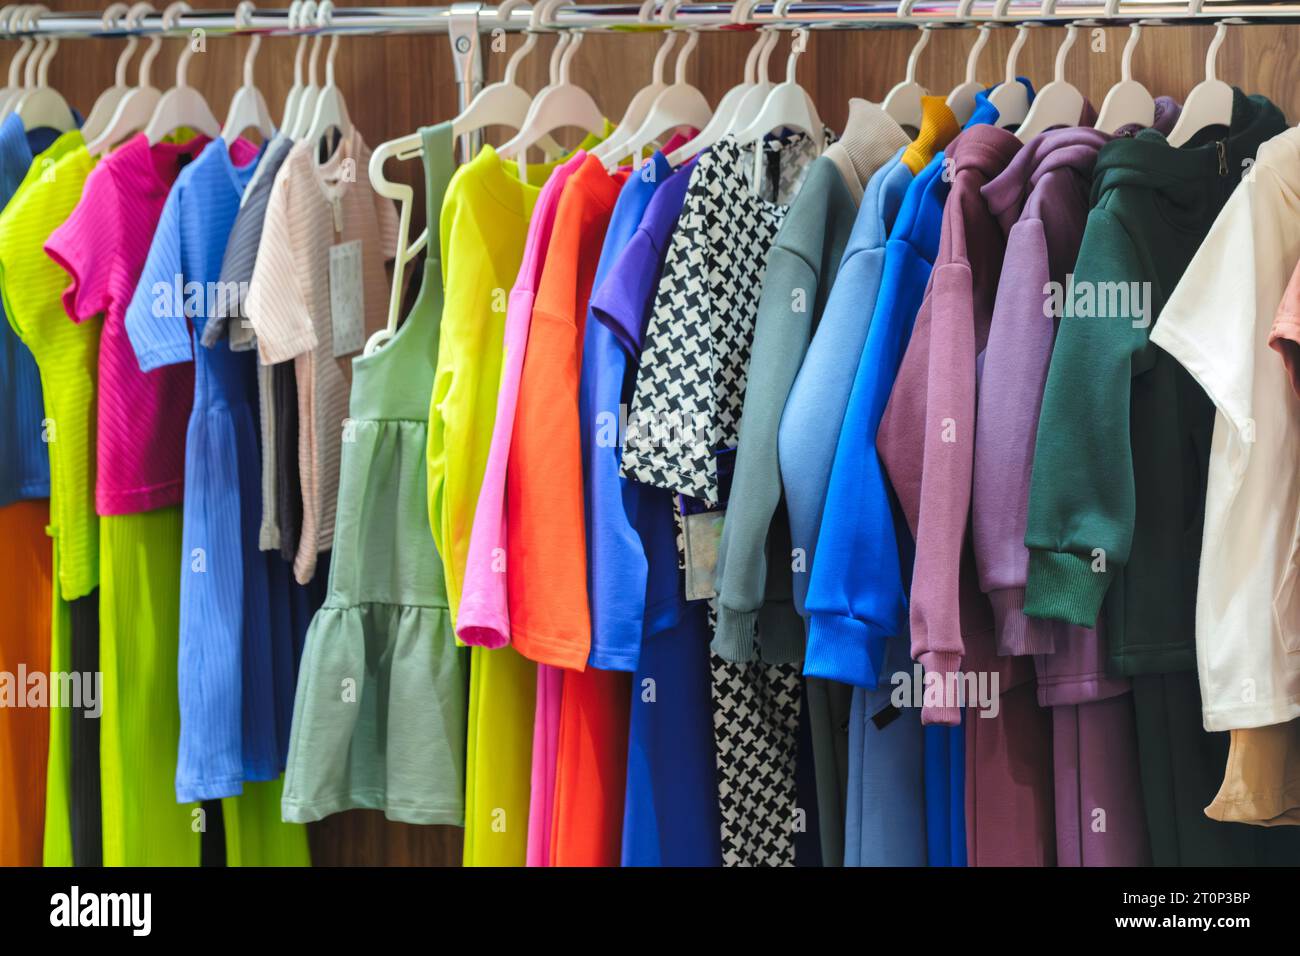 Kinder- und Jugendbekleidung in Kinderbekleidungsgeschäften. Kleidung für Kinder und Jugendliche im Laden Stockfoto